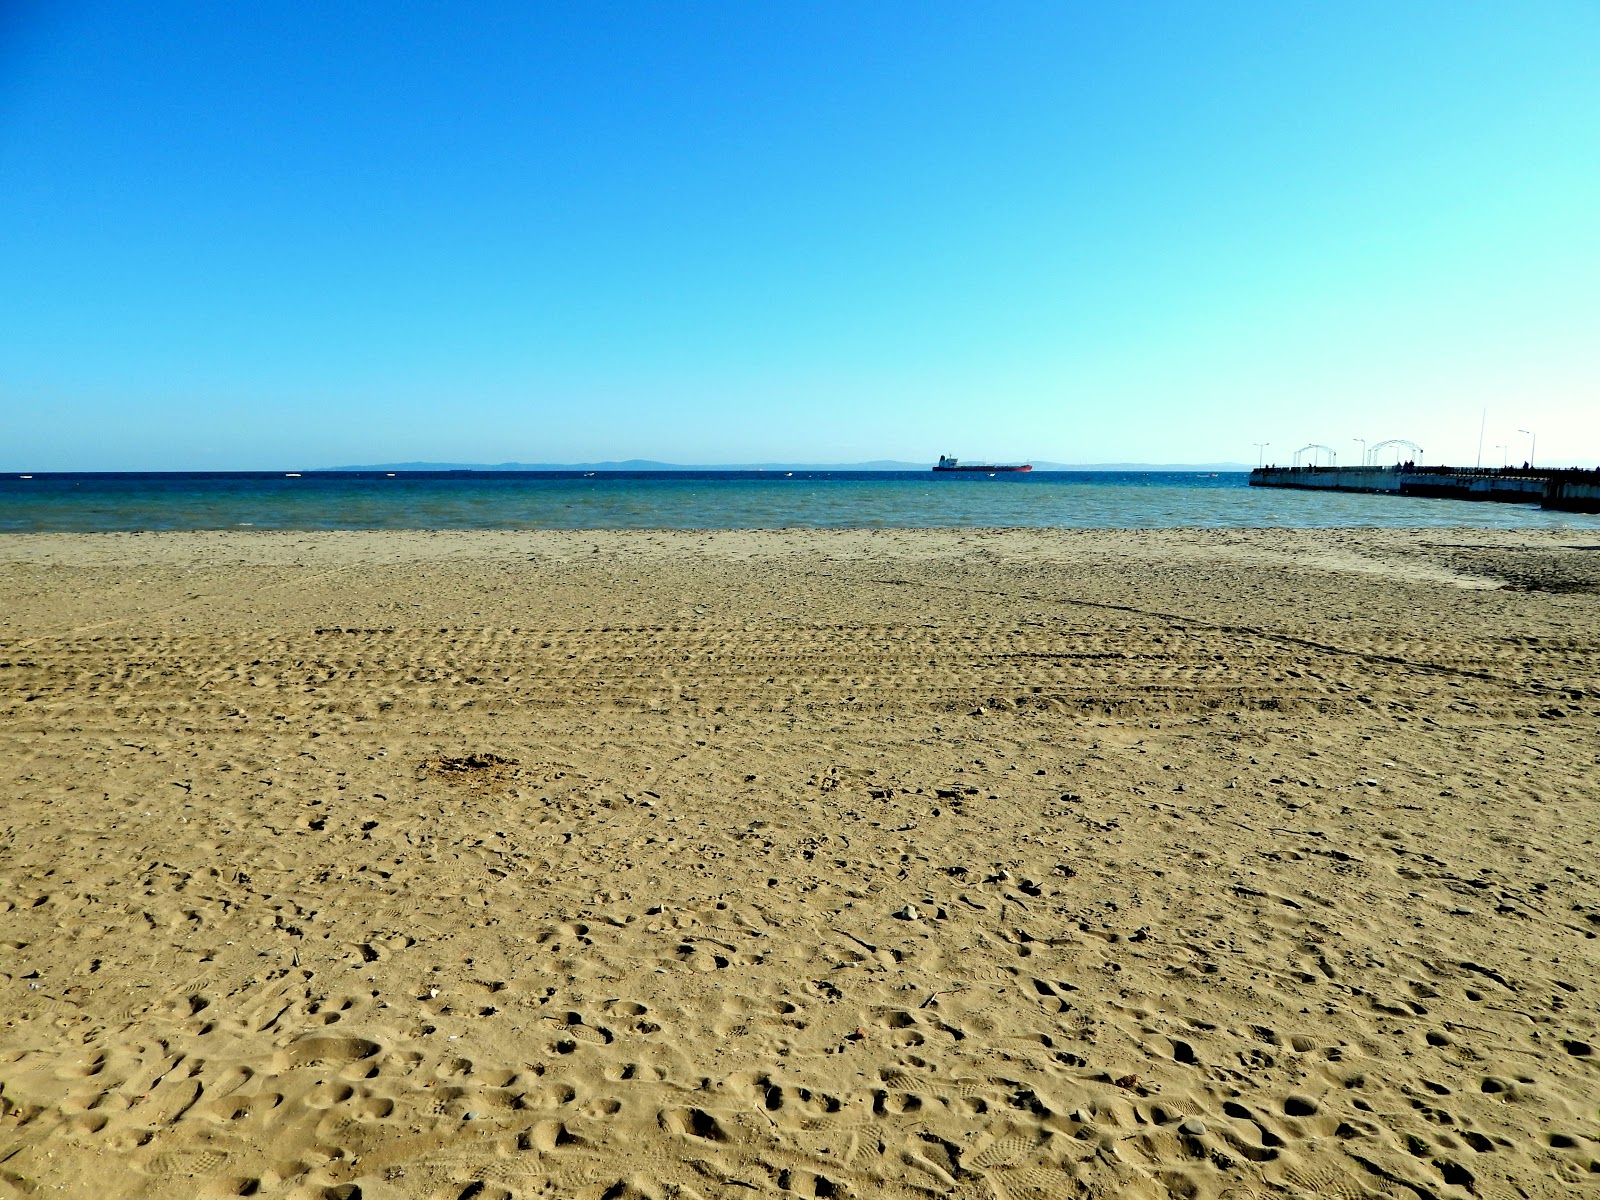 Zdjęcie Sarkoy beach z powierzchnią brązowy piasek